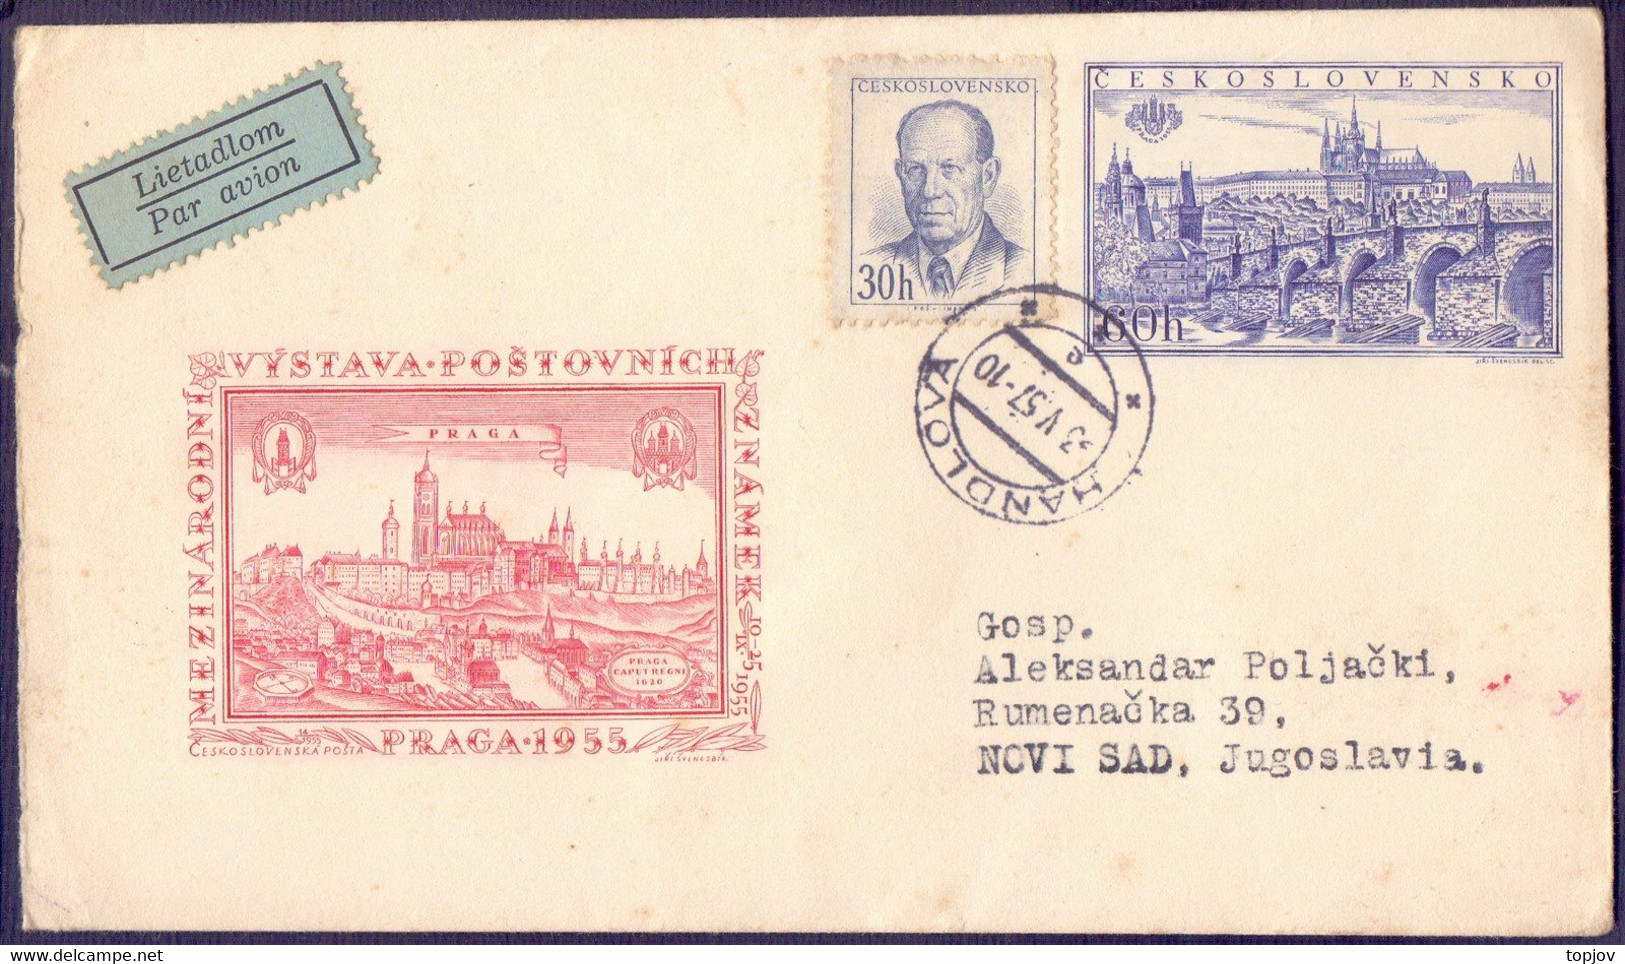 CZECHOSLOVAKIA - PRAGA - BRIDGE - 1957 - Buste